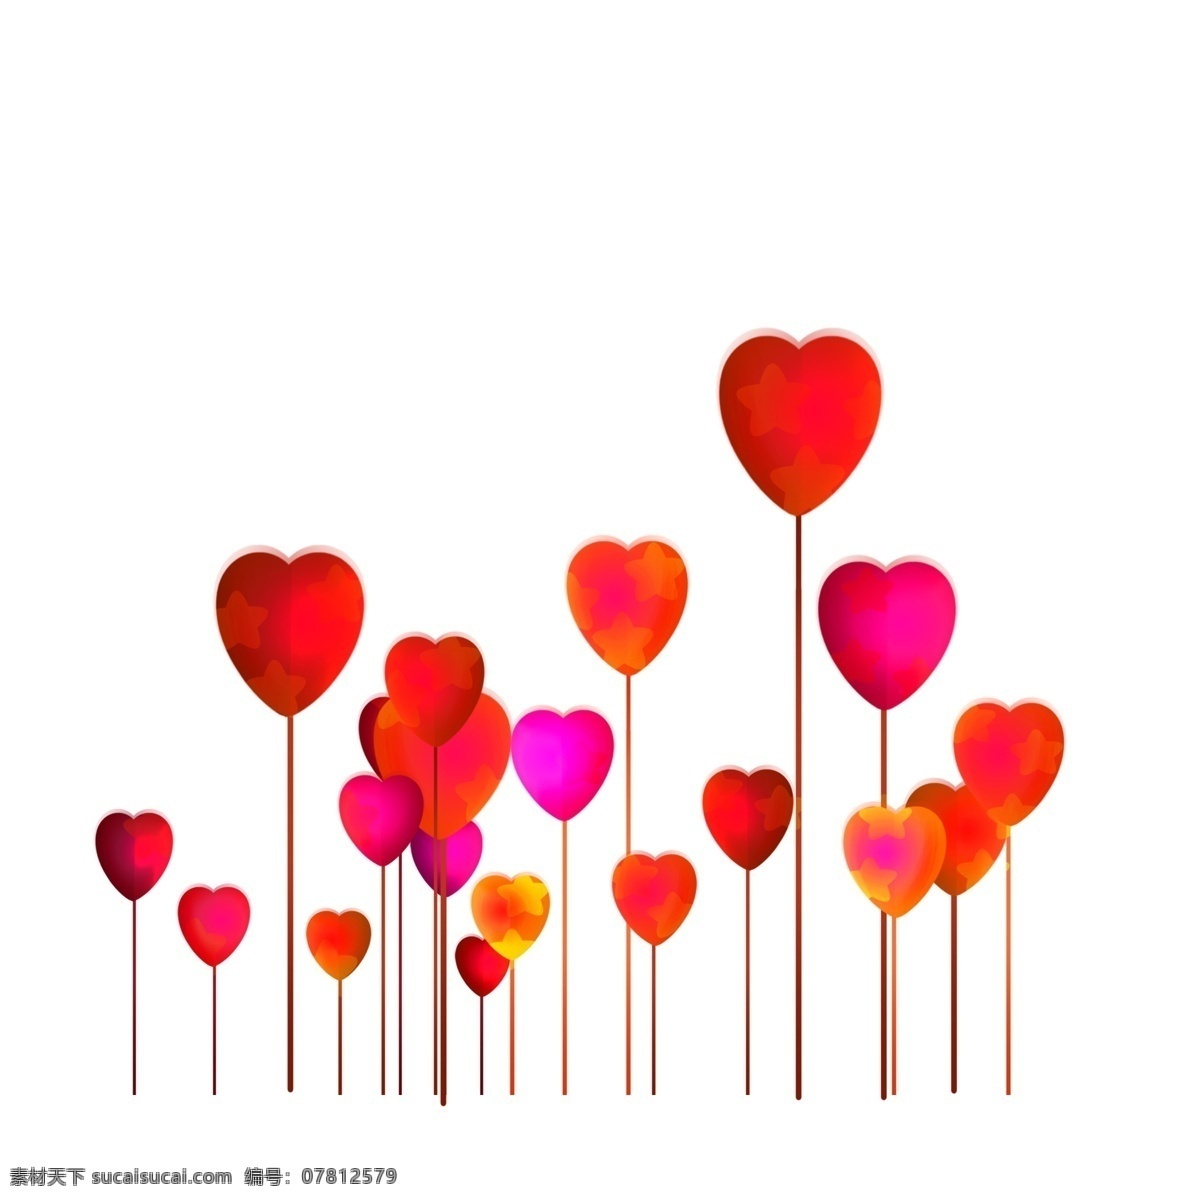 耀眼 彩色 气球 插画 耀眼的气球 爱心气球 卡通插画 气球插画 爱情插画 礼物插画 红色的气球